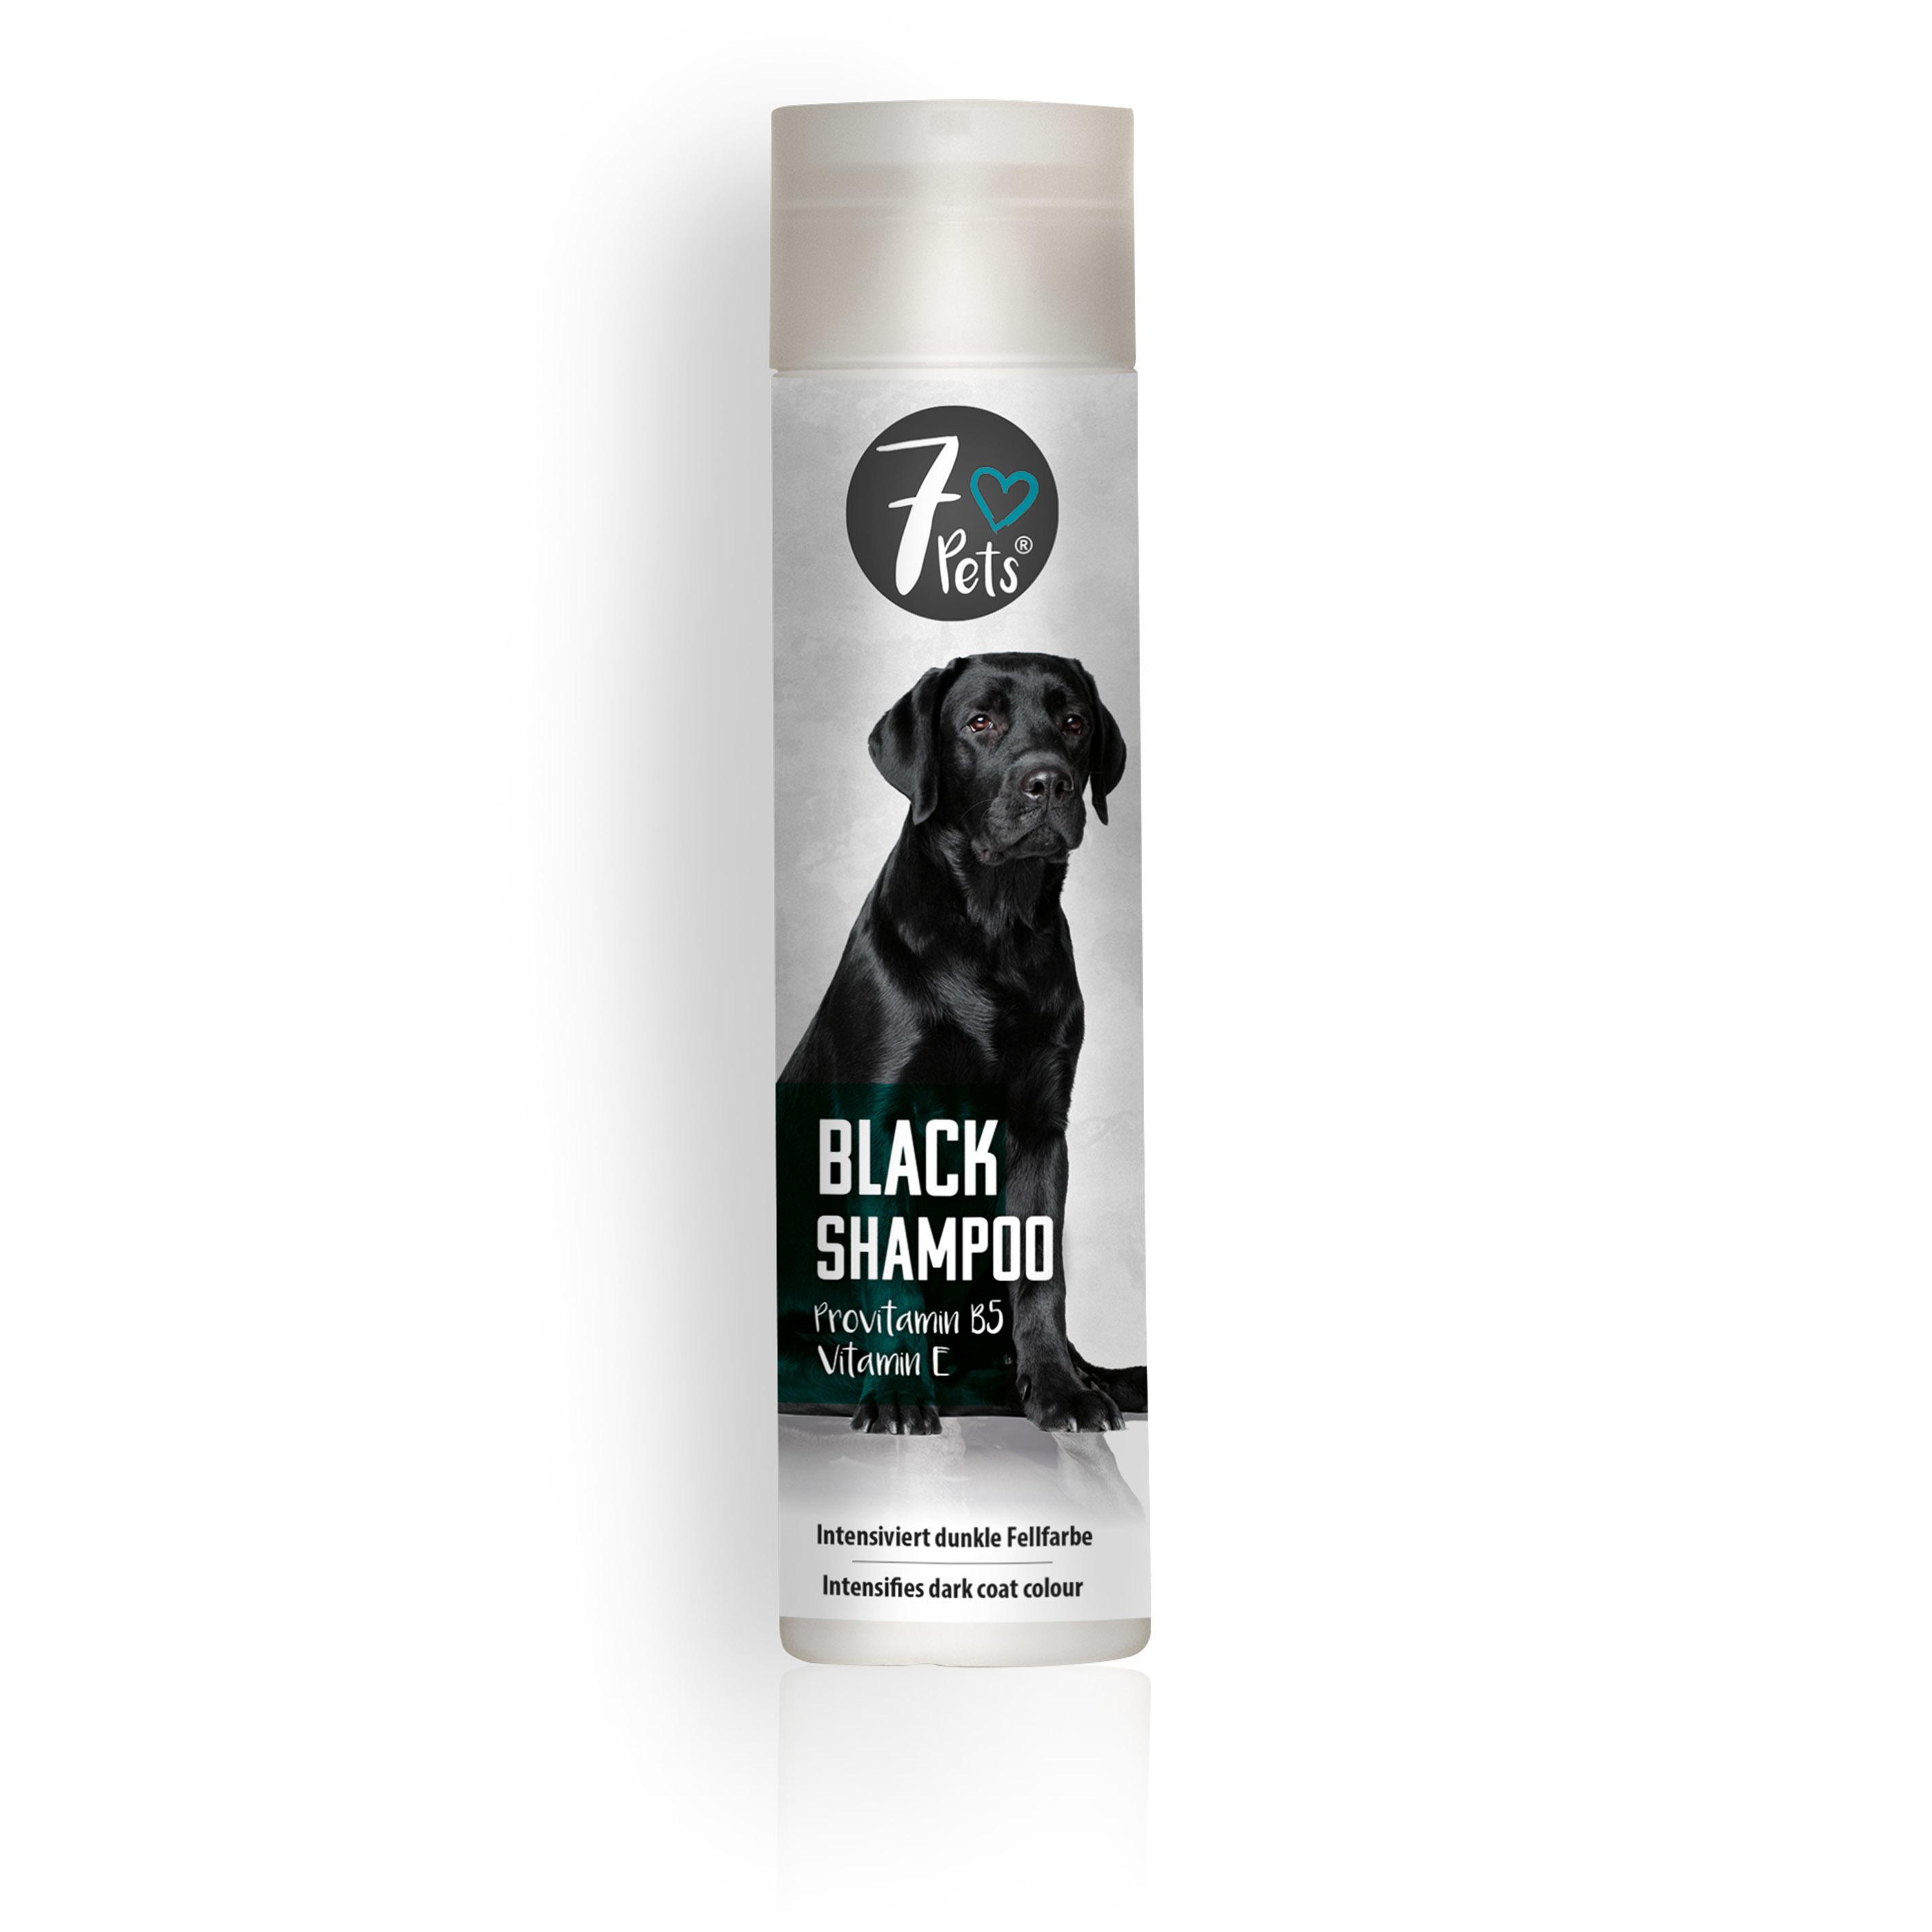 7pets Black Shampoo, šampūns tumšiem suņiem, 250 ml